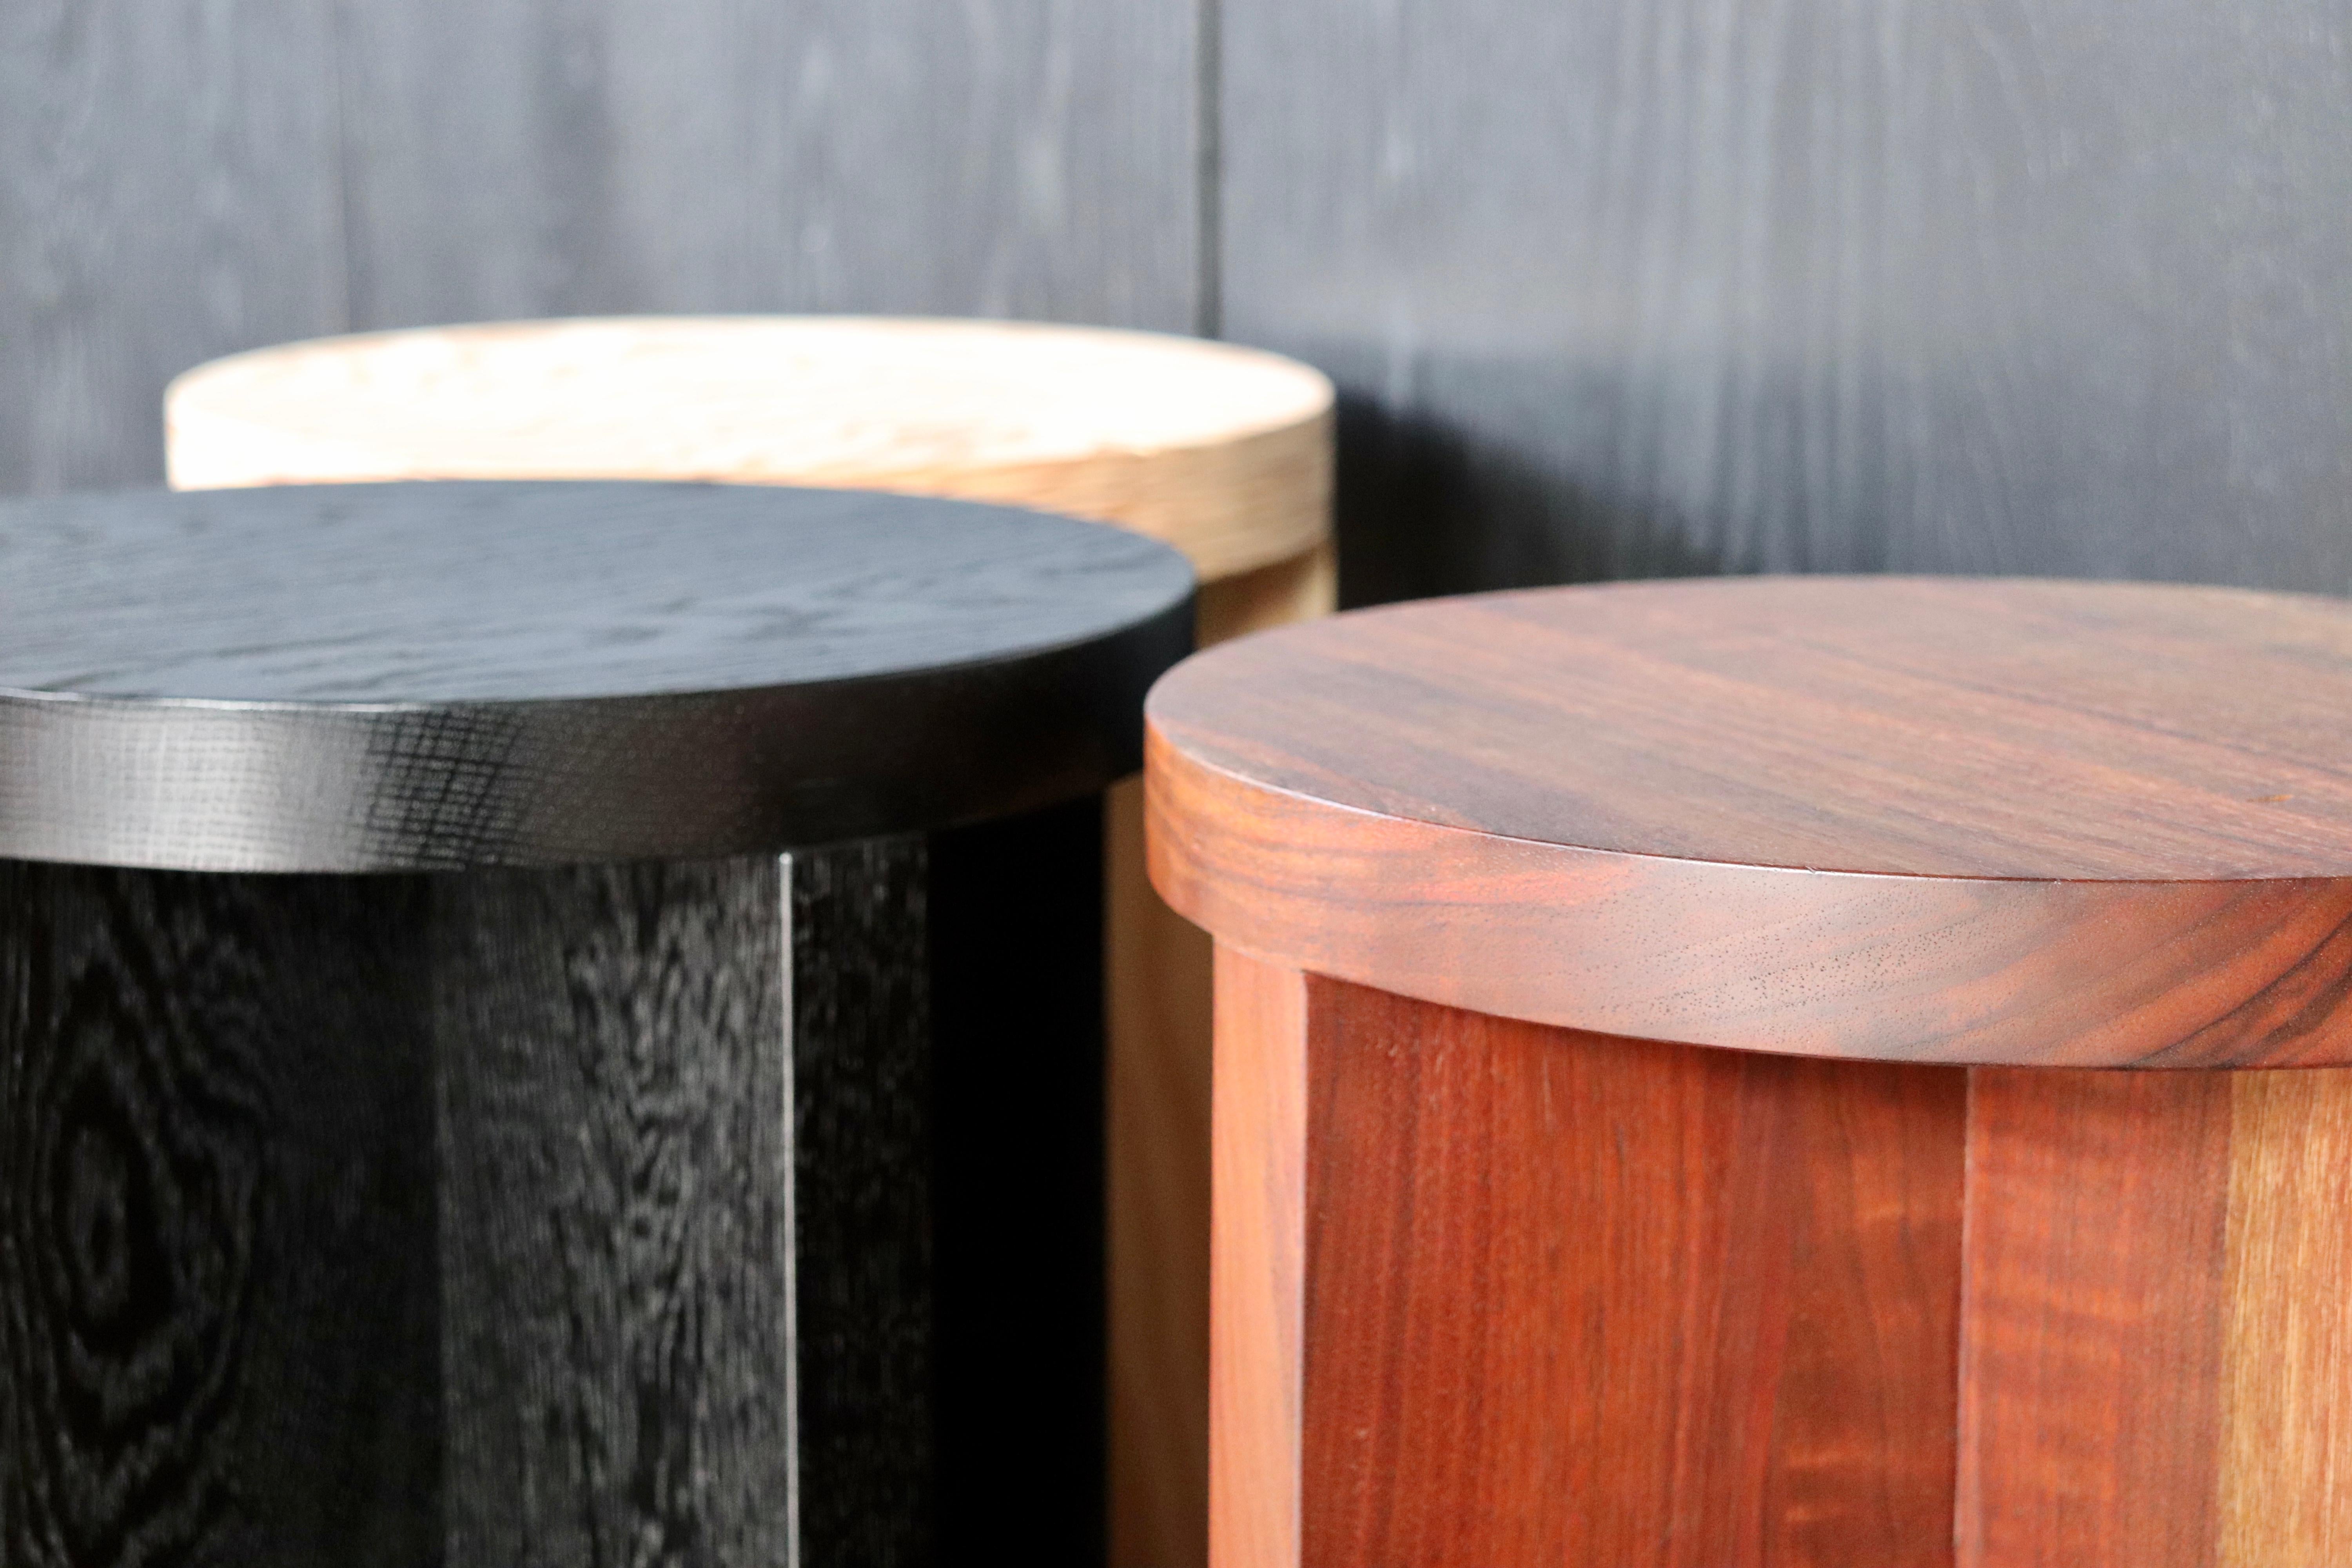 Tabouret ou table d'appoint en bois massif, en frêne noirci, avec un plateau rond. Avec un design épuré et minimal, ces tabourets sont fabriqués à la main à Portland, dans l'Oregon, avec une menuiserie à tenon et mortaise dans l'atelier de Material.